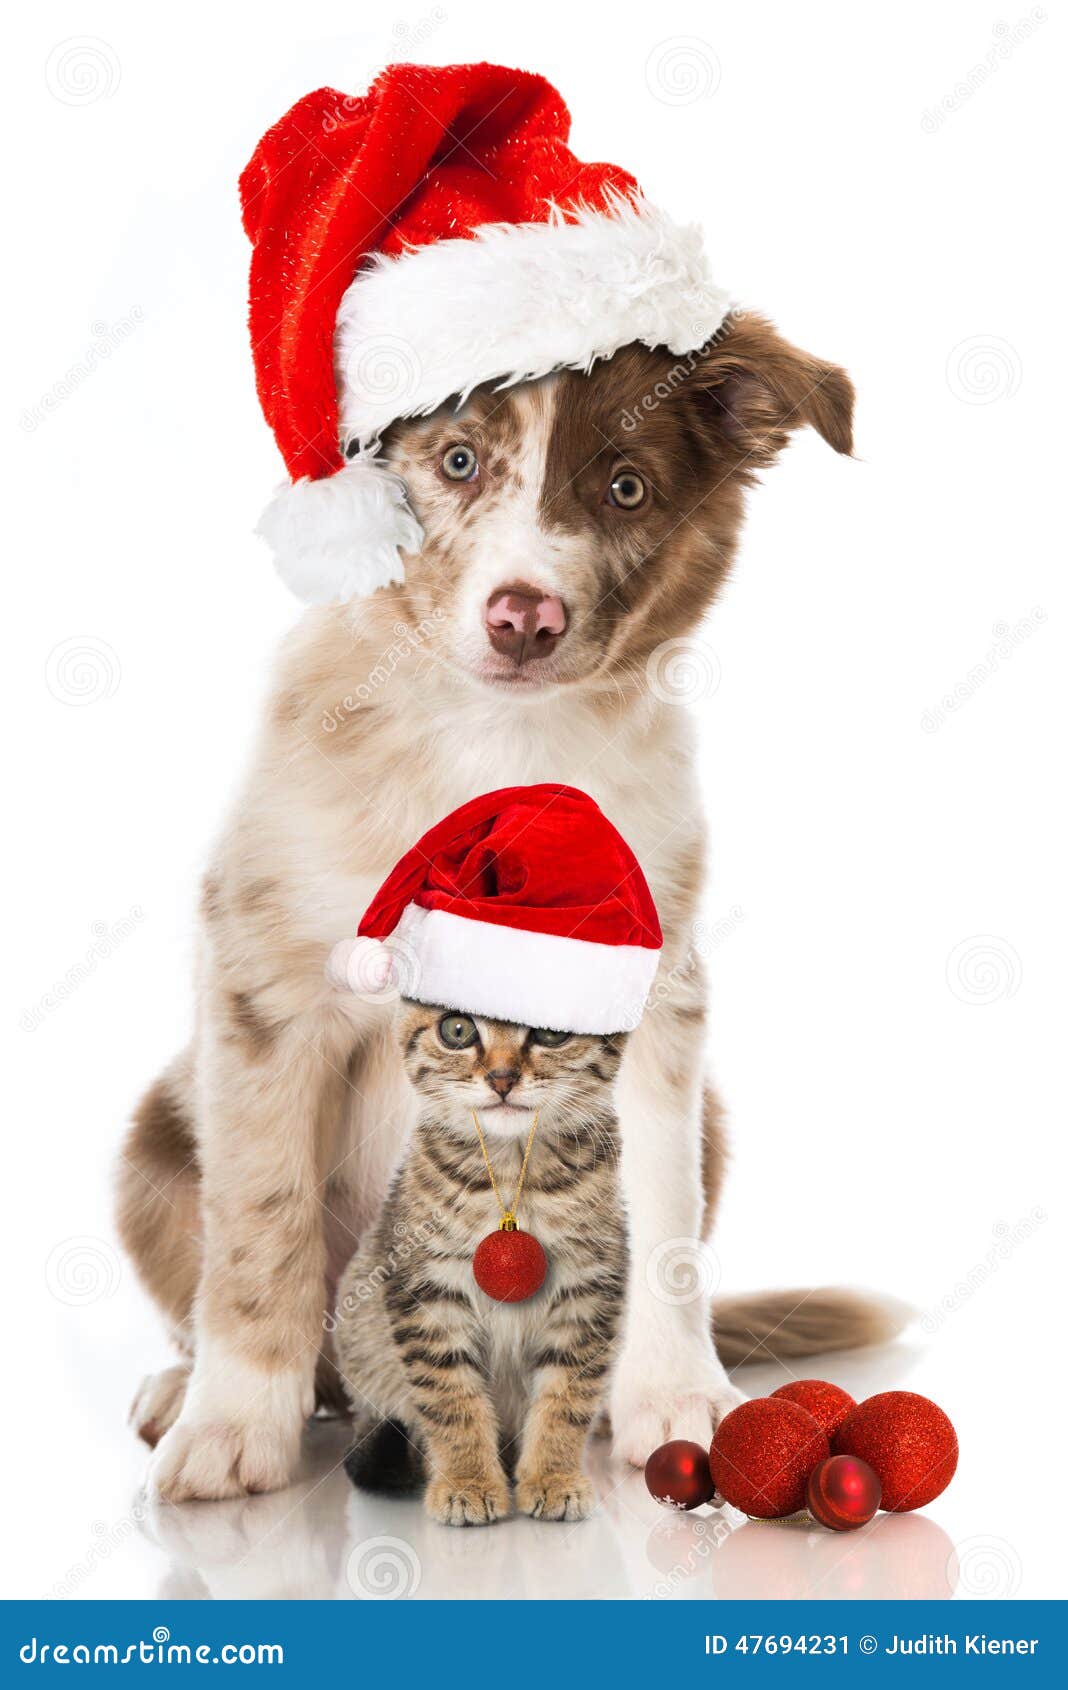 photo stock chien et chat de noël image